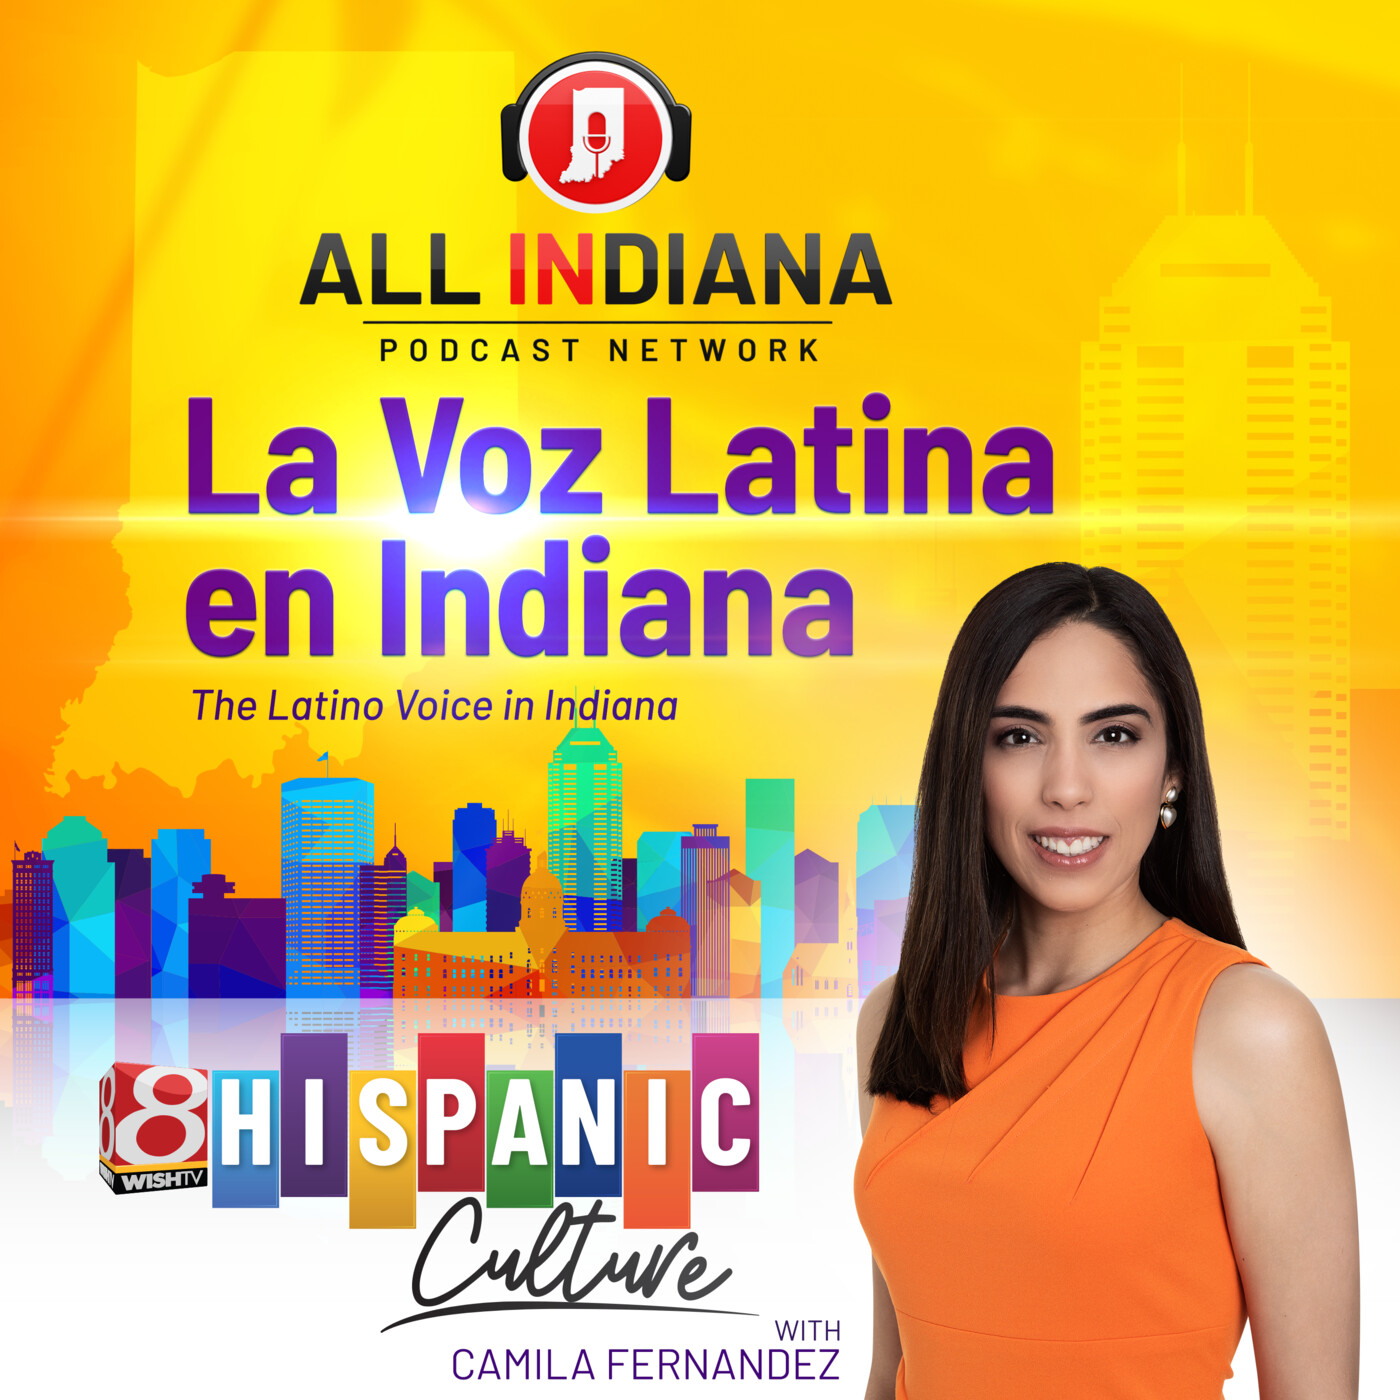 Love programas latinos